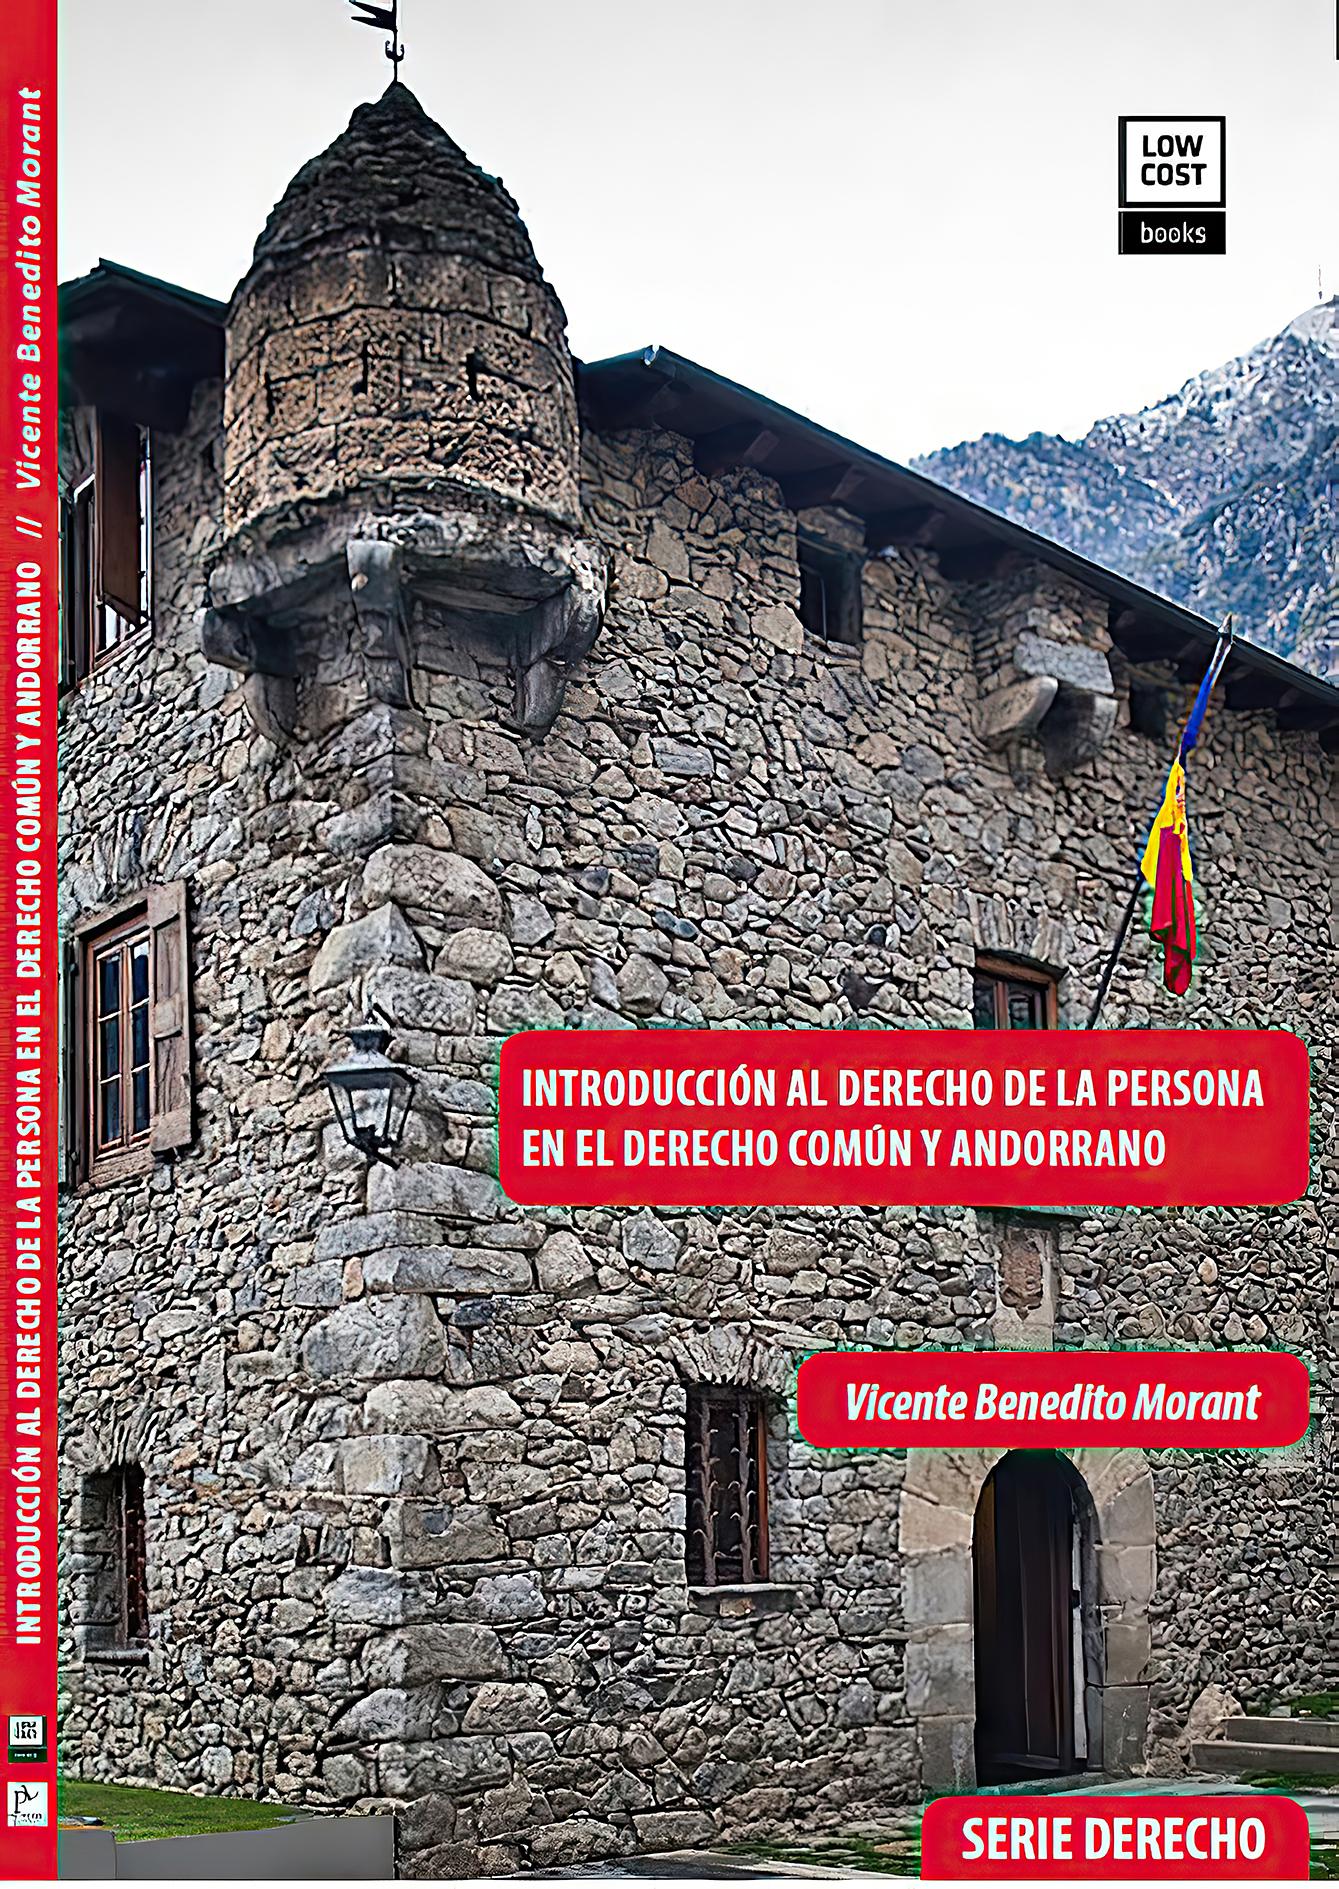 NTRODUCCIÓN AL DERECHO DE LA PERSONA  EN EL DERECHO COMÚN Y ANDORRANO Versión Ebook (PDF descargable)